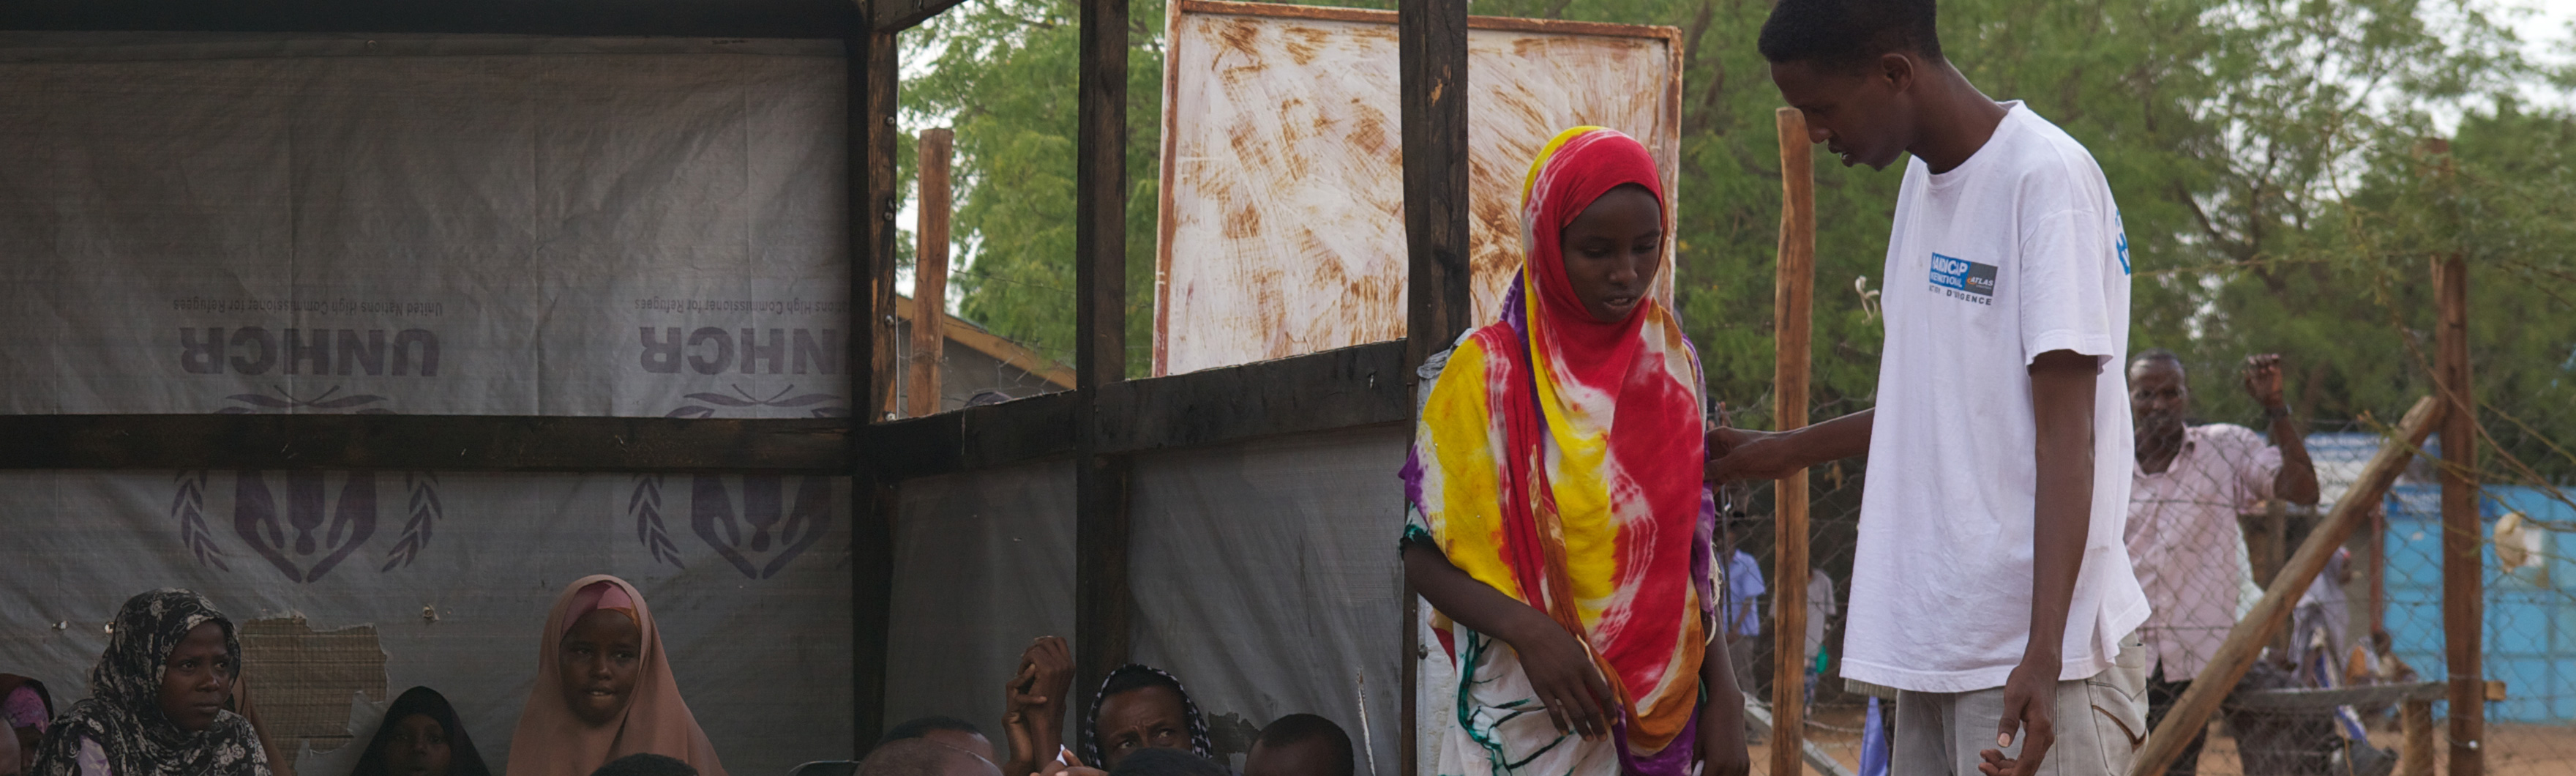 Kenya, Dadaab, jeune fille non accompagnée. Elle sera prise en charge par HI durant son enregistrement afin de s'assurer qu'elle ait accès à l'aide et qu'elle ne soit pas en situation d'insécurité.